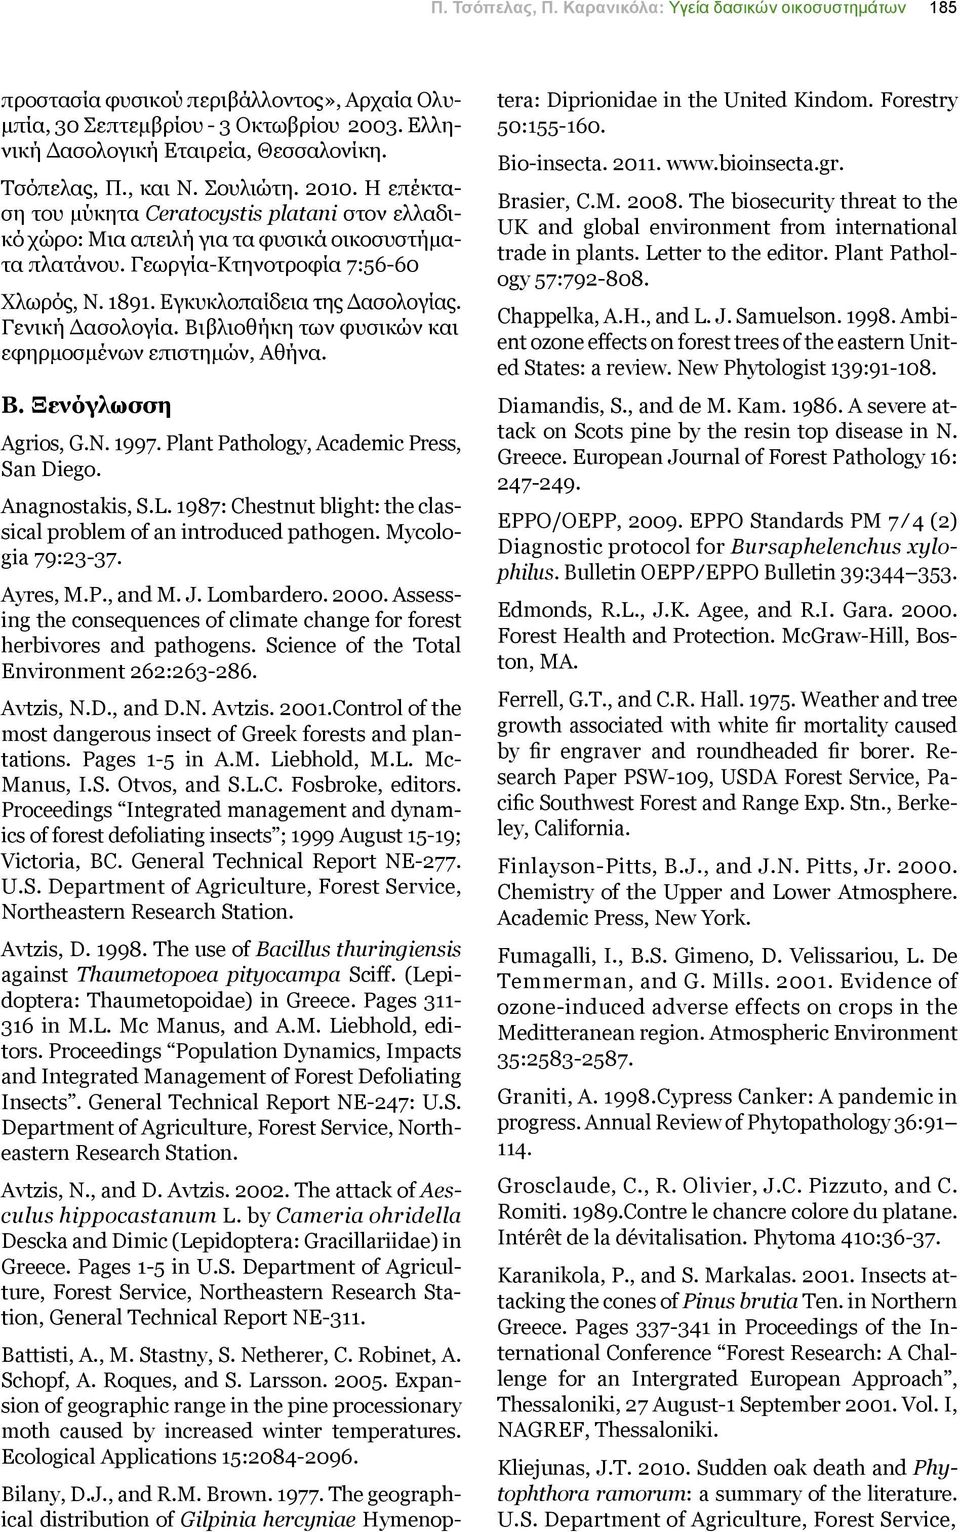 Εγκυκλοπαίδεια της Δασολογίας. Γενική Δασολογία. Βιβλιοθήκη των φυσικών και εφηρμοσμένων επιστημών, Αθήνα. Β. Ξενόγλωσση Agrios, G.N. 1997. Plant Pathology, Academic Press, San Diego. Anagnostakis, S.